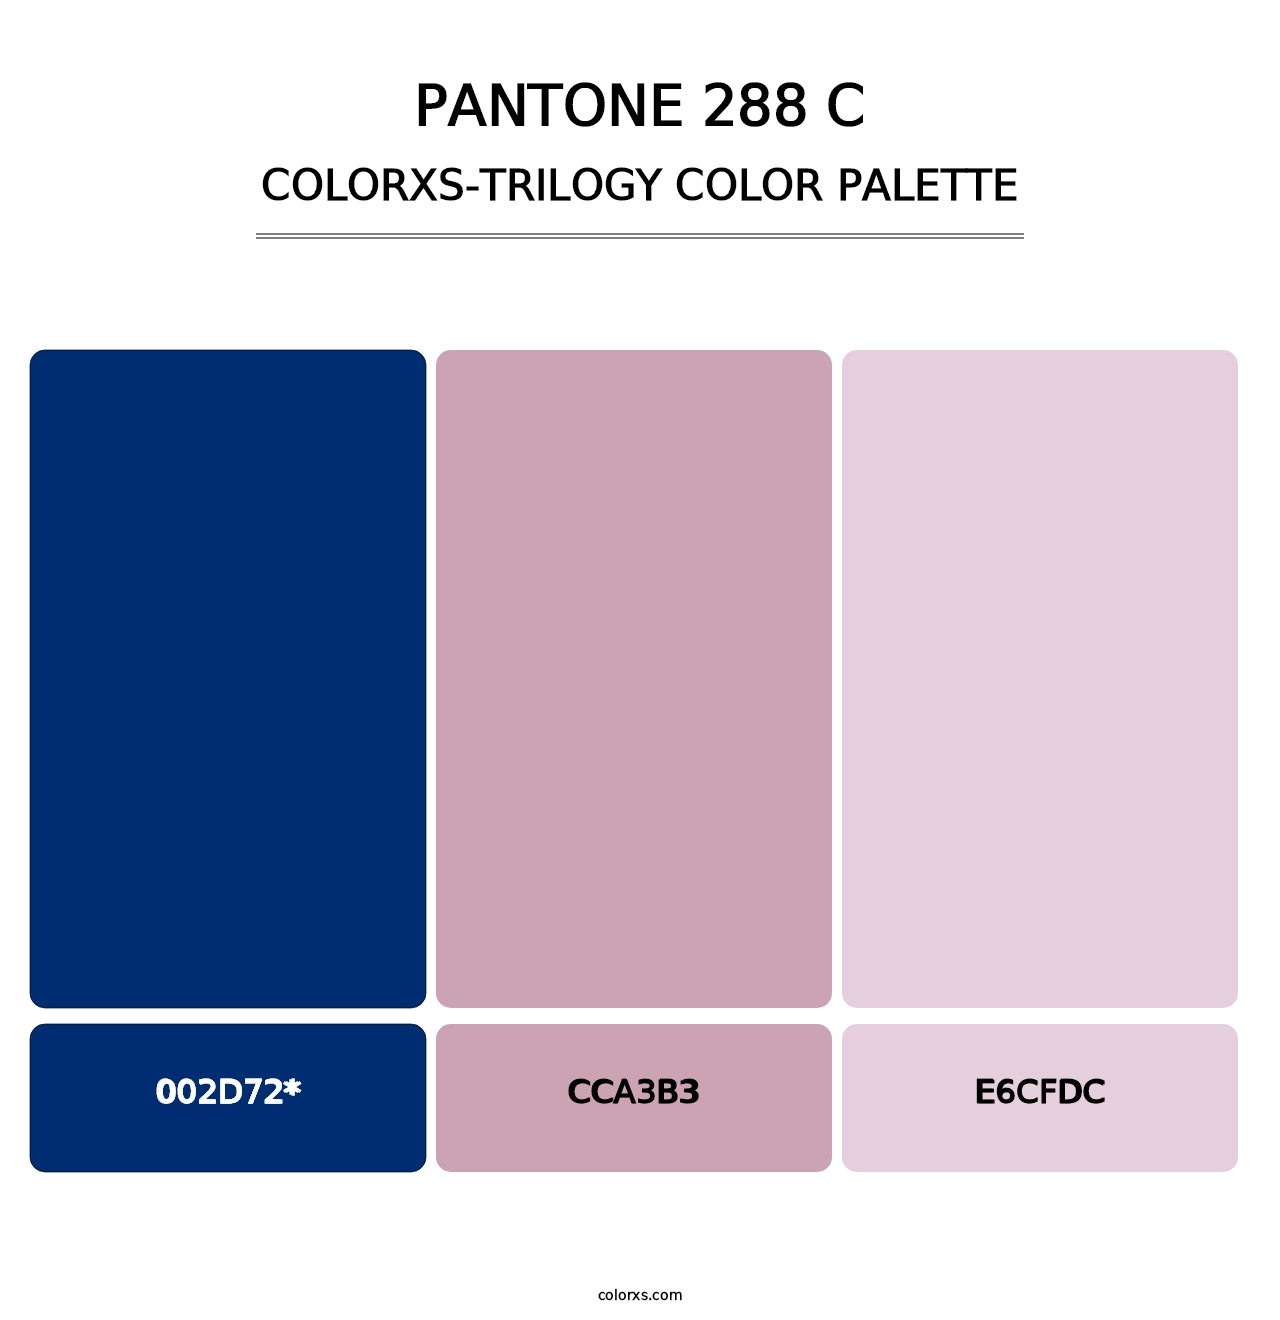 PANTONE 288 C - Colorxs Trilogy Palette